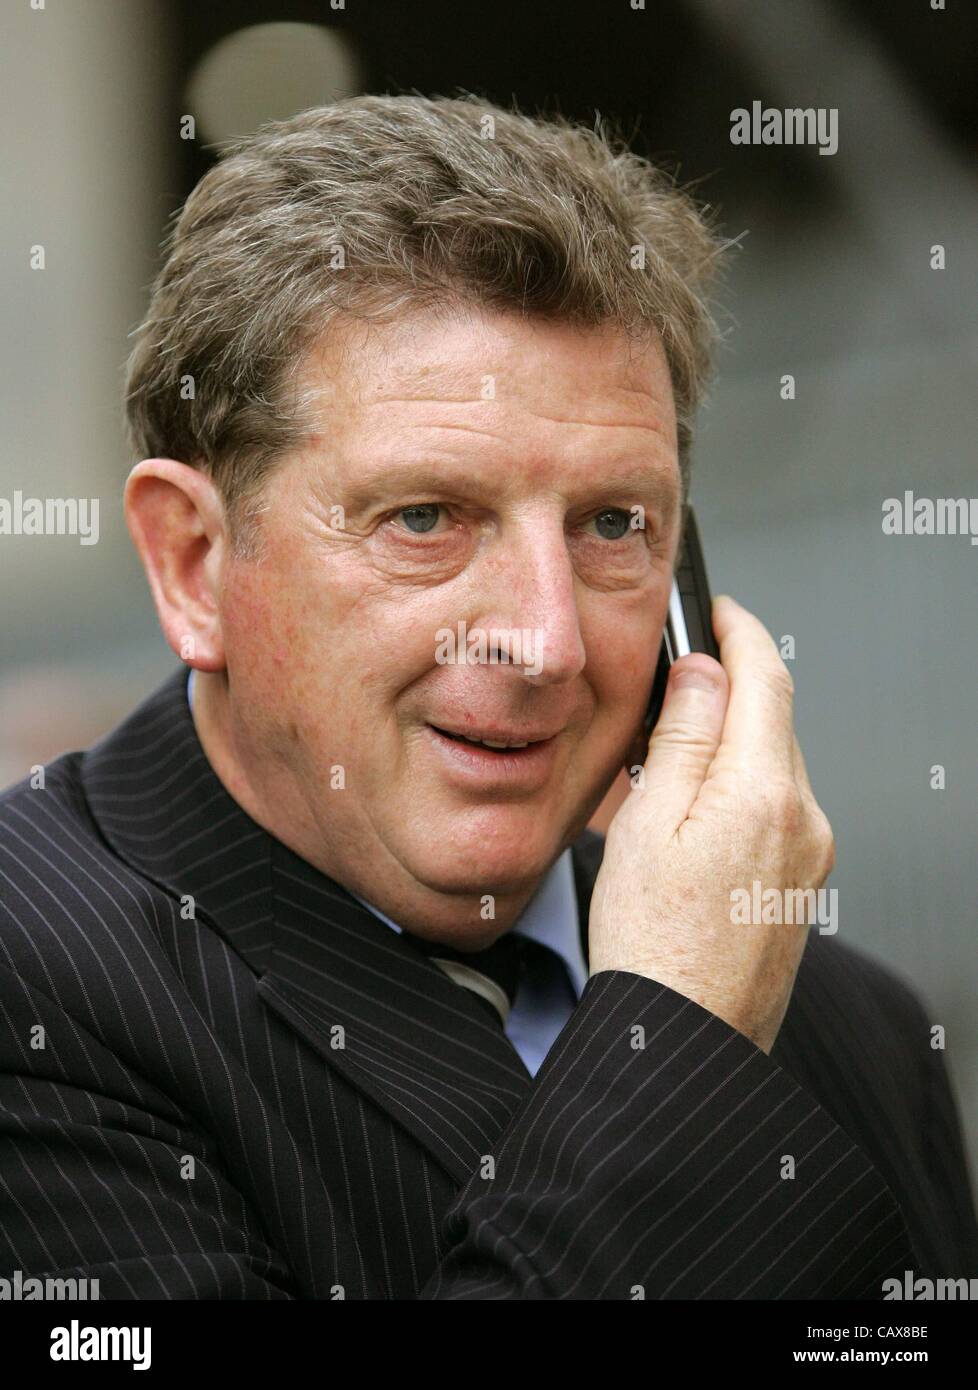 20.06.2006 Roy Hodgson, National Manager von Finnland gezeigt Spoeaking auf dem Handy Stockfoto